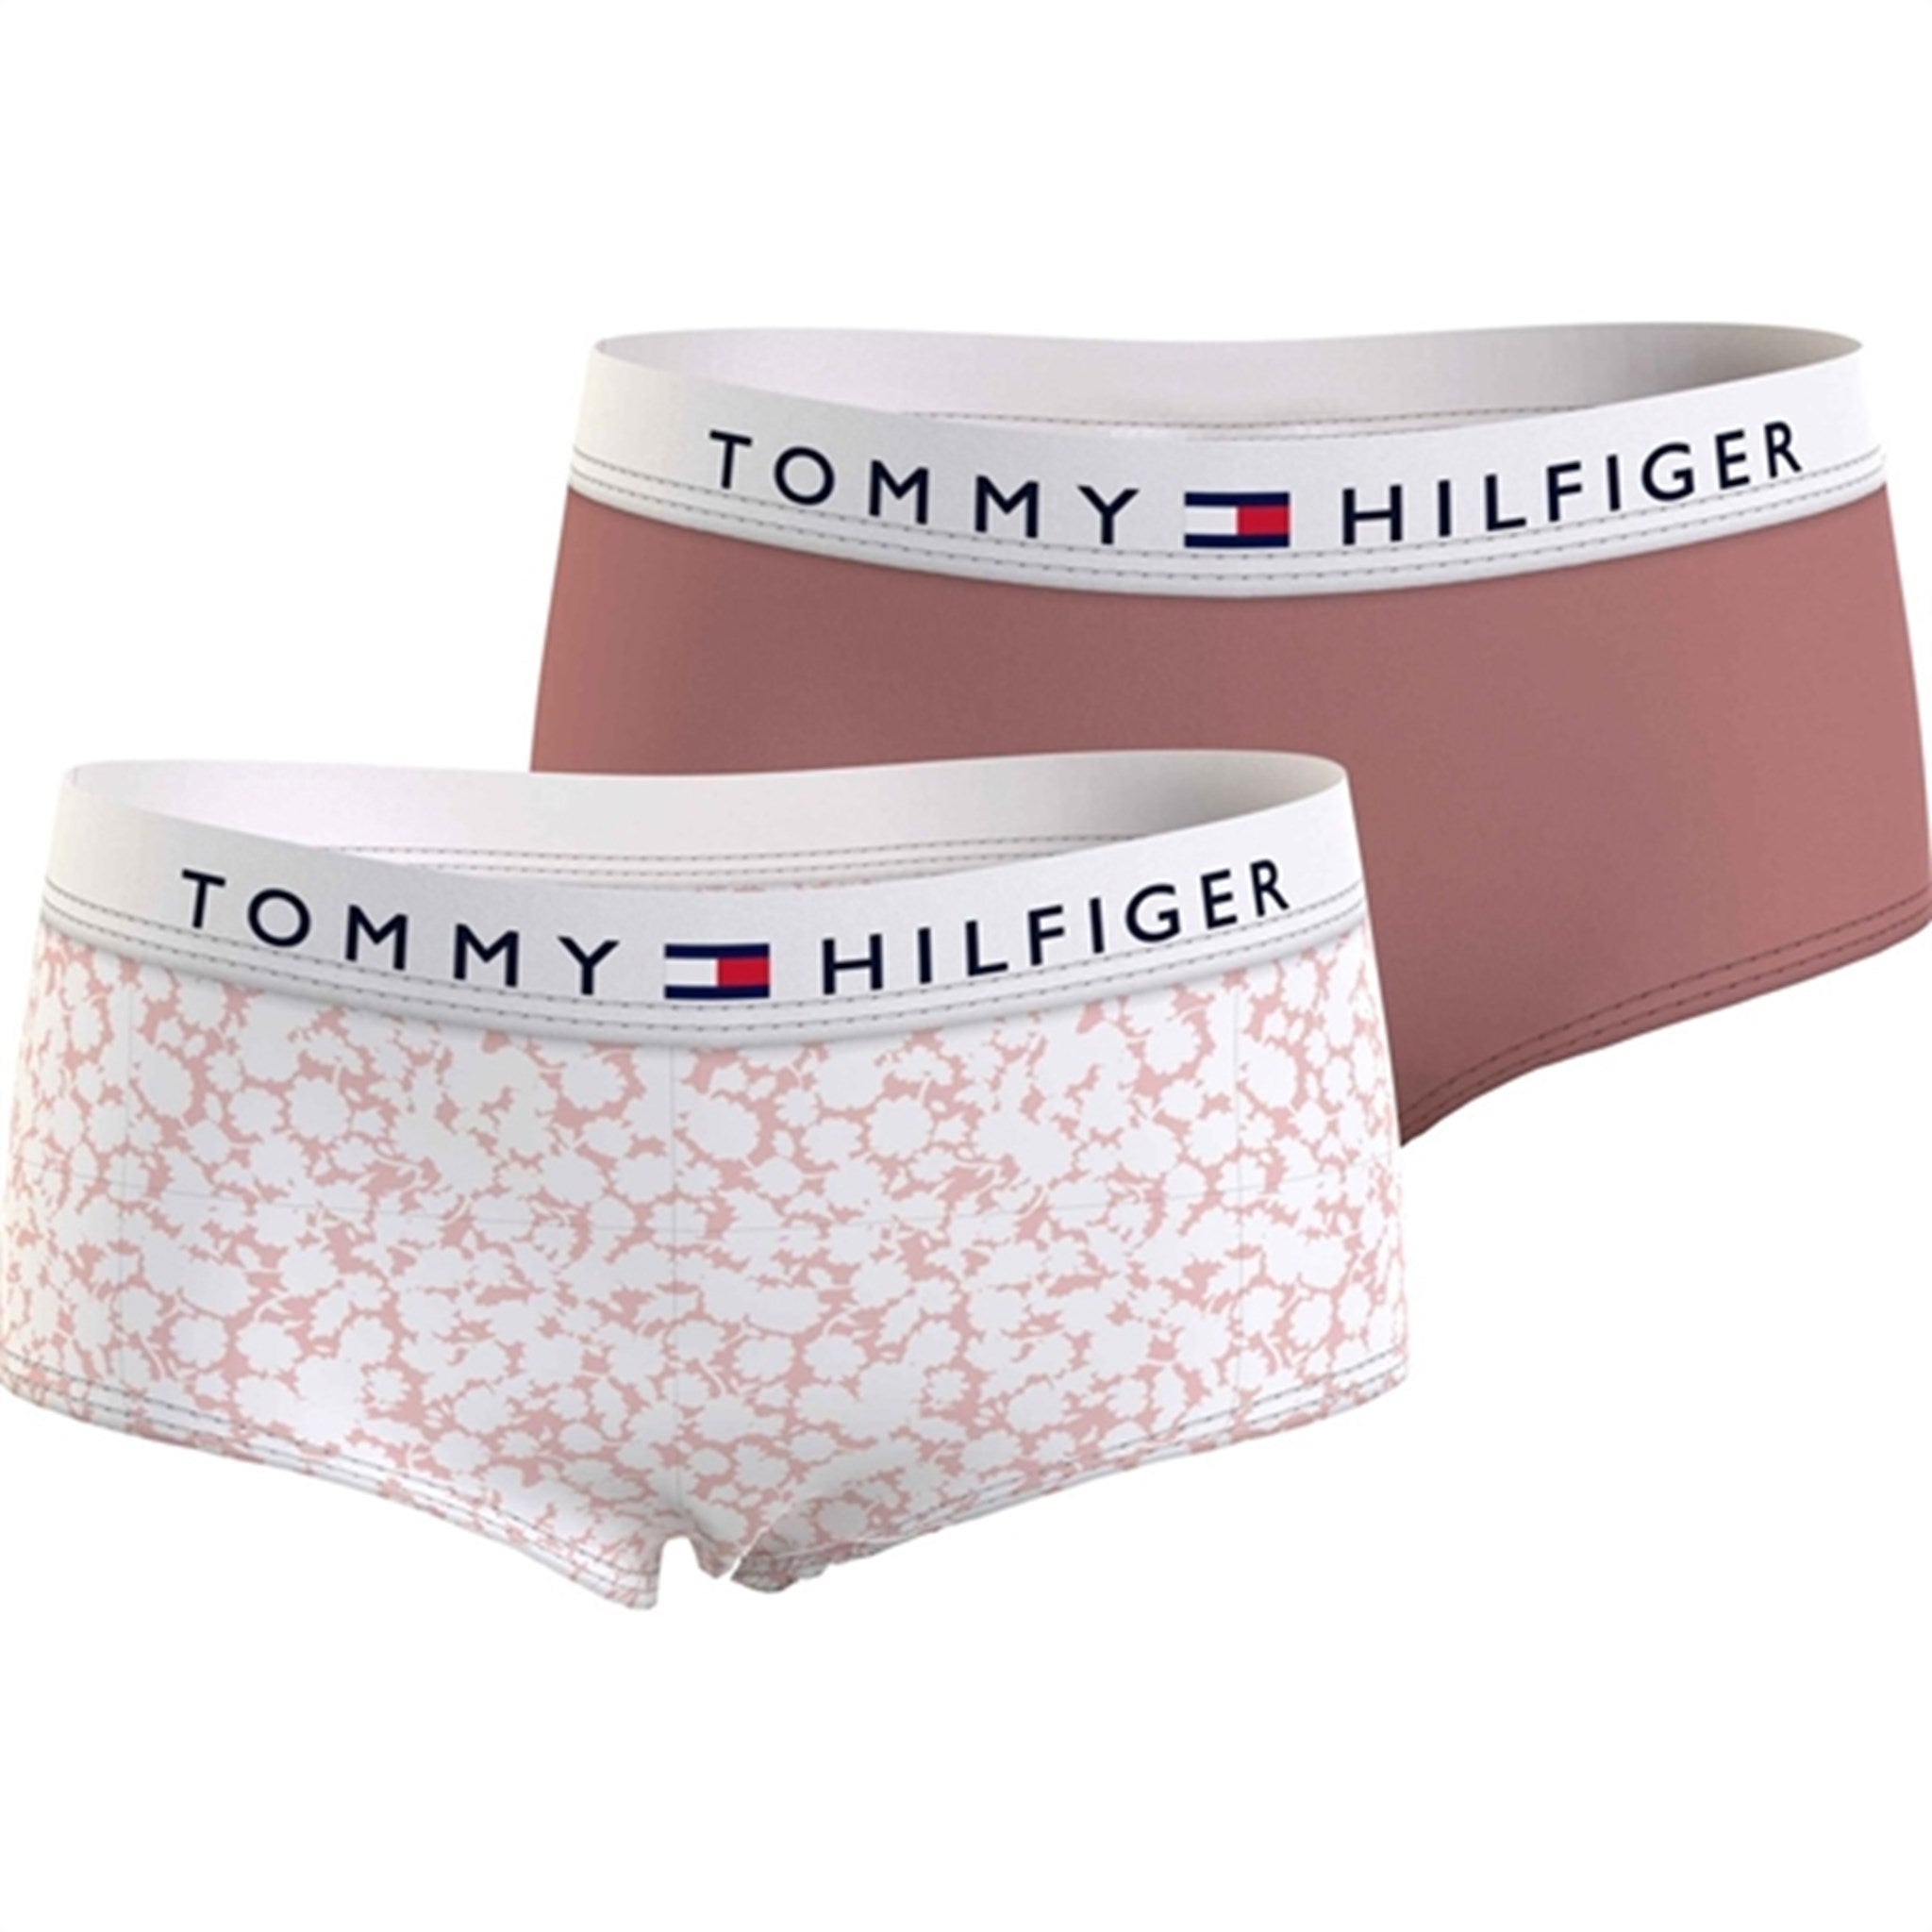 Tommy Hilfiger Underbukser 2-Pak Printed Floral/Teaberry Blossom - Str. 12-14 år